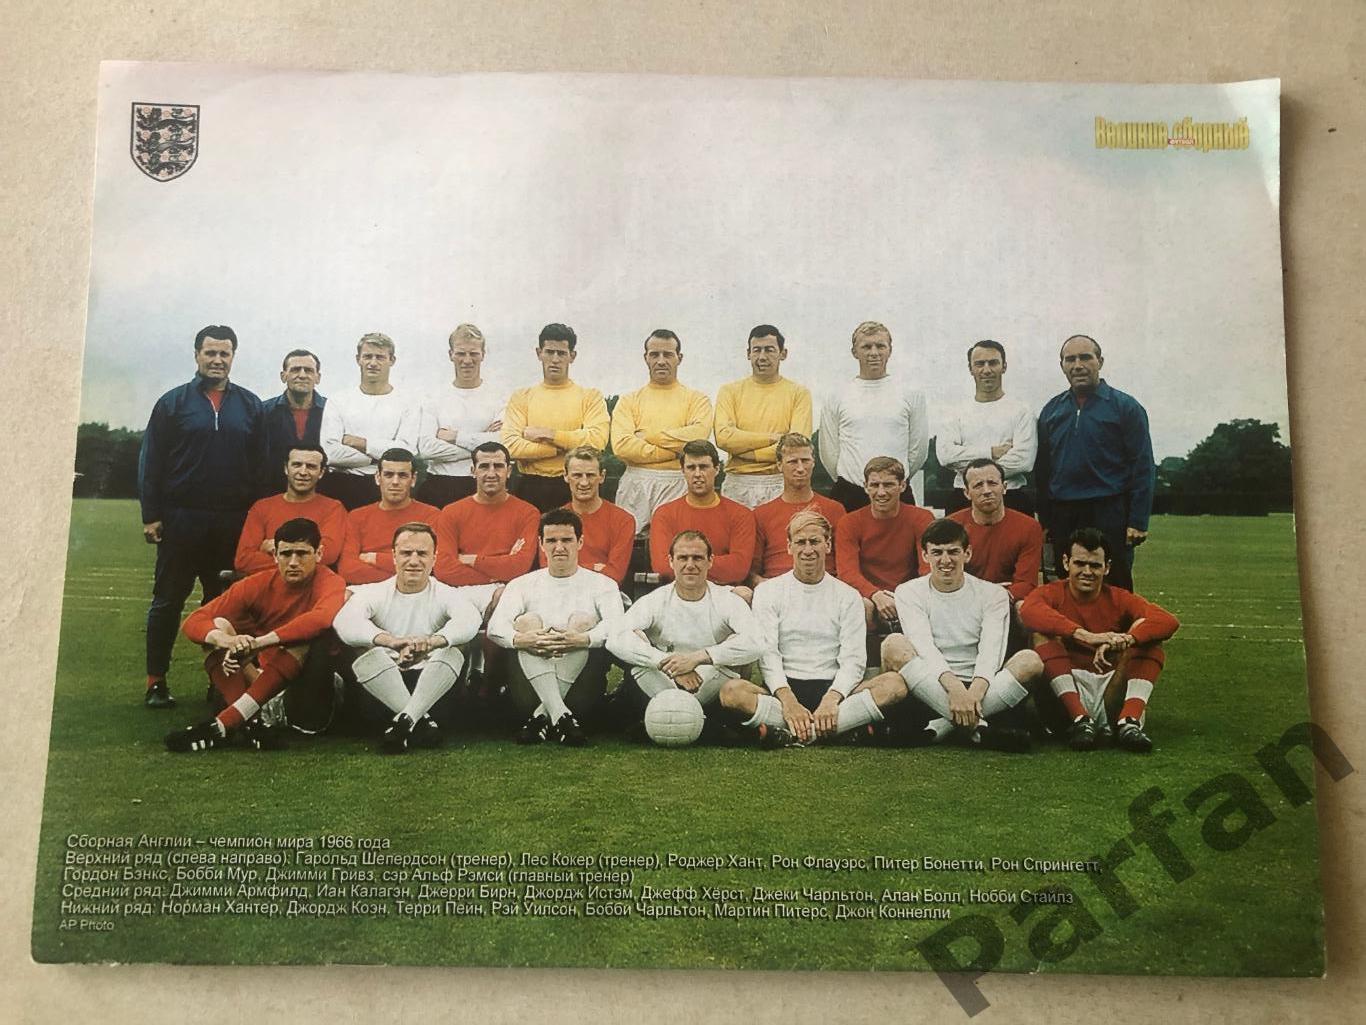 Журнал Футбол Україна 2006 Великие Сборные Англія Спецвипуск 1